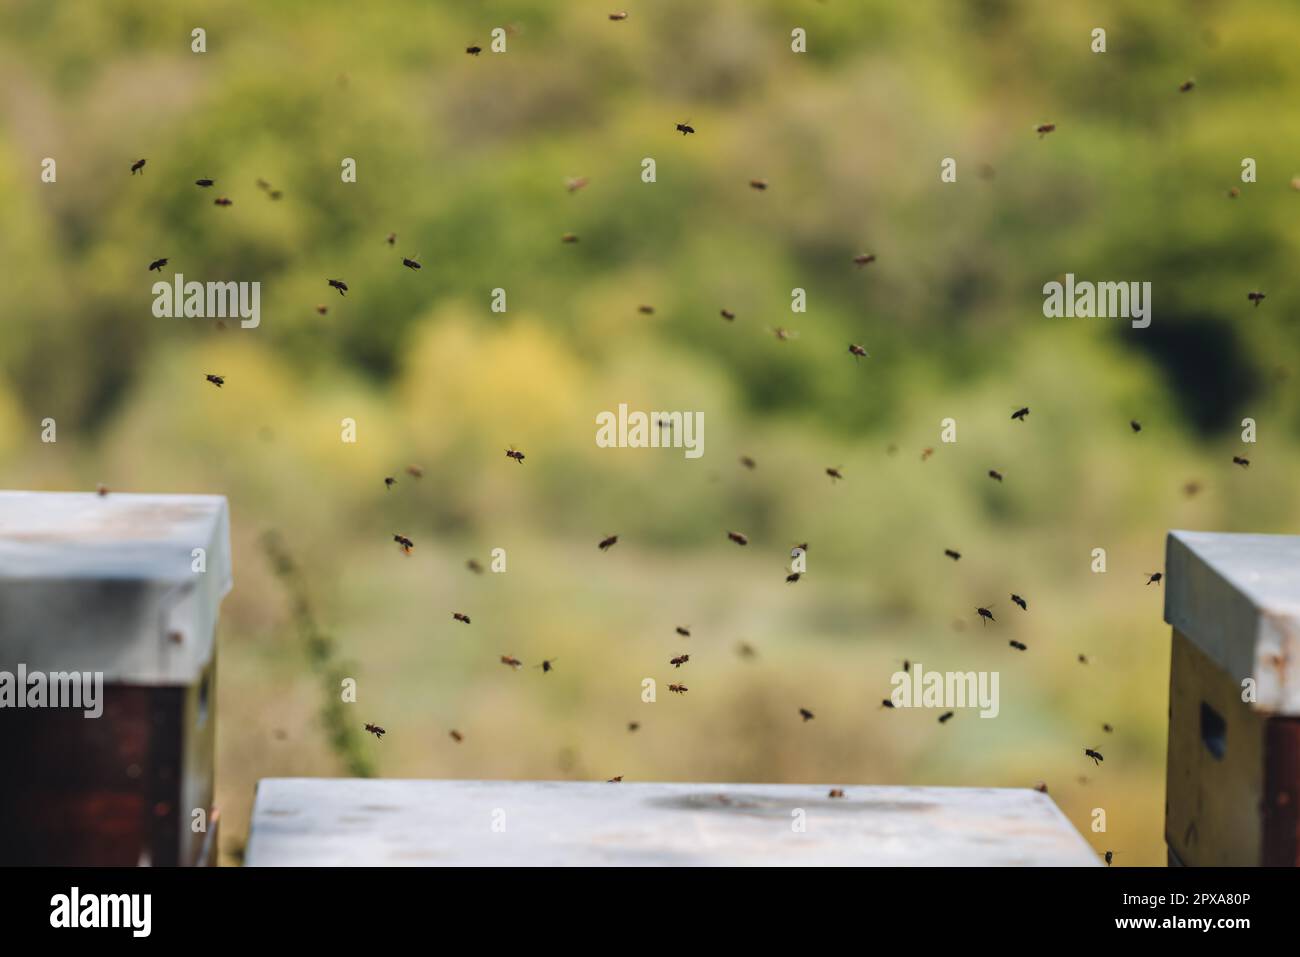 Bienen, die um einen Bienenstock fliegen, um in Uxembourg Imkerei zu betreiben Stockfoto